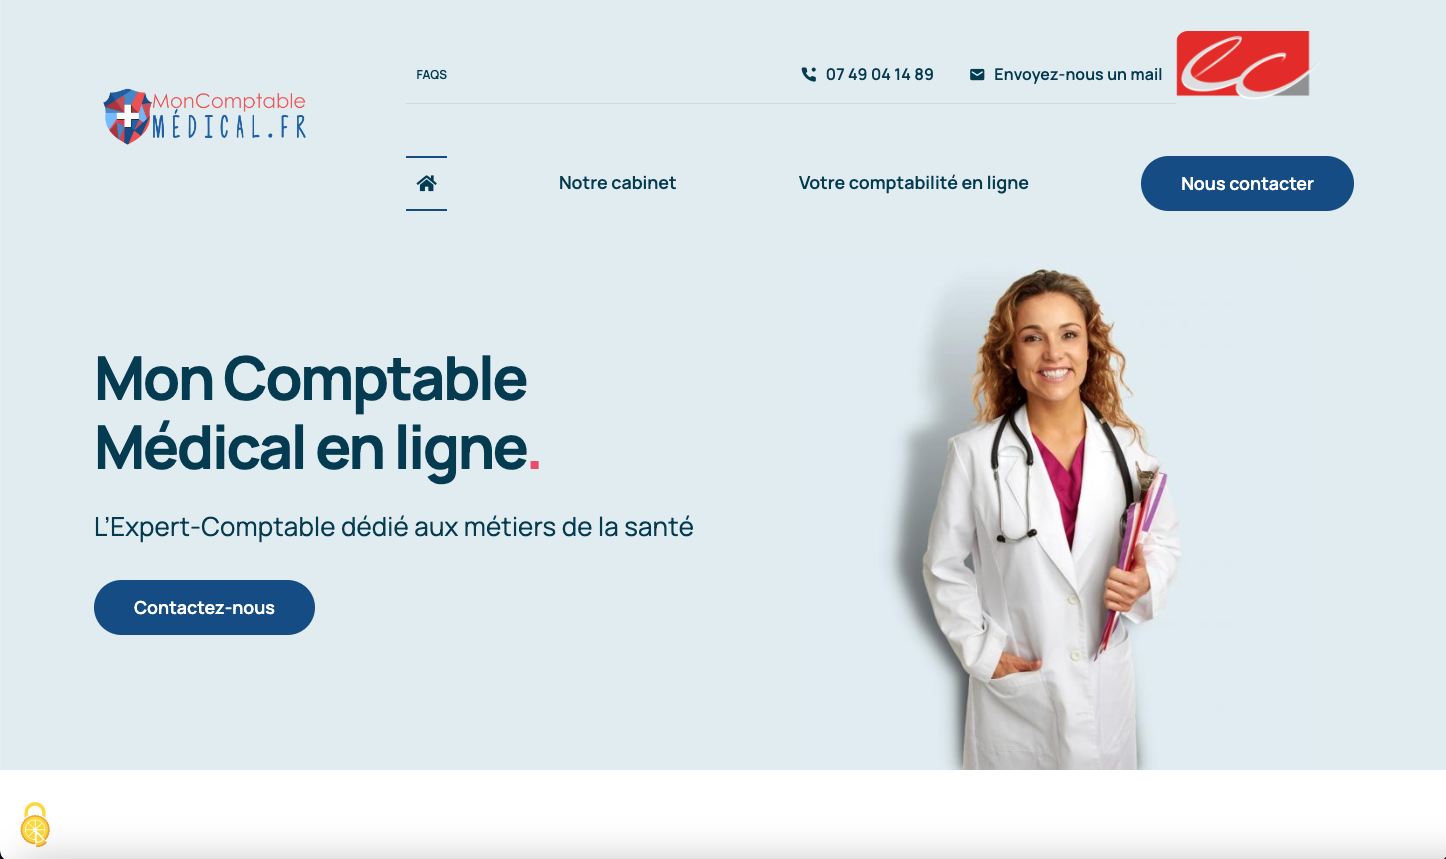 Mon Comptable Medical Expert-Comptable à Montpellier 34000 Hérault